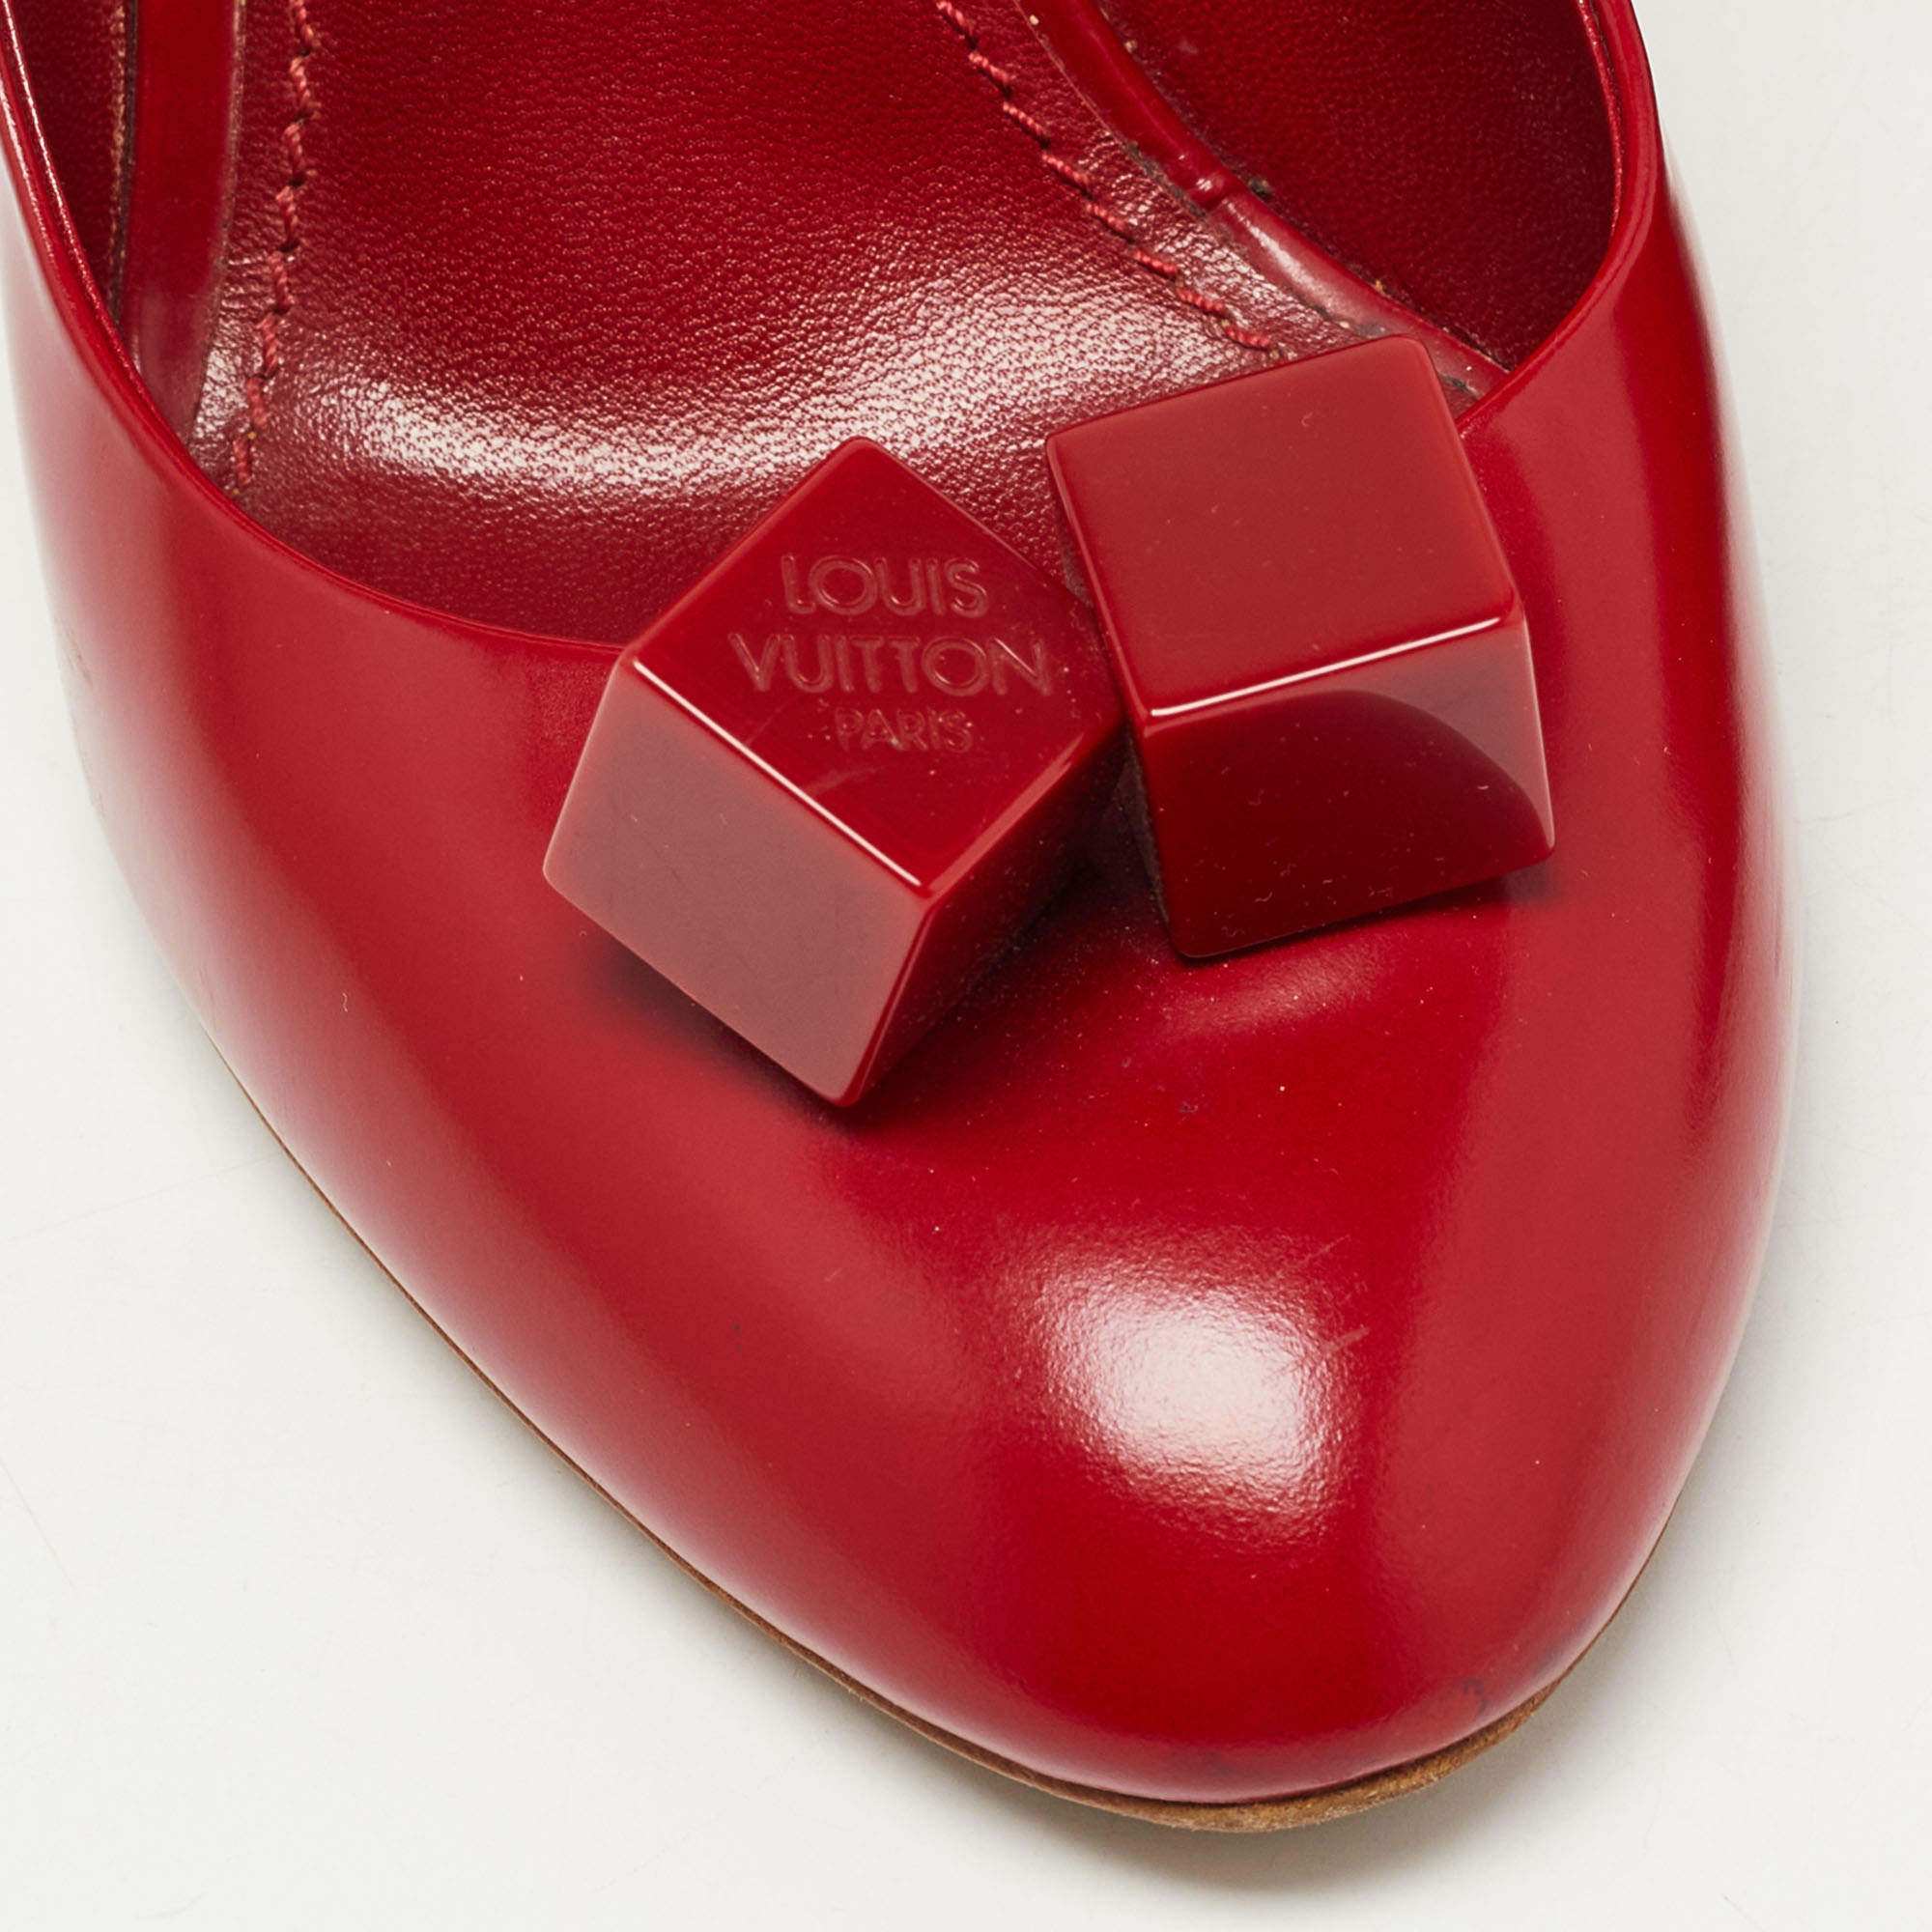 Louis Vuitton Red Patent Leather Dice Pumps Size 37 Louis Vuitton